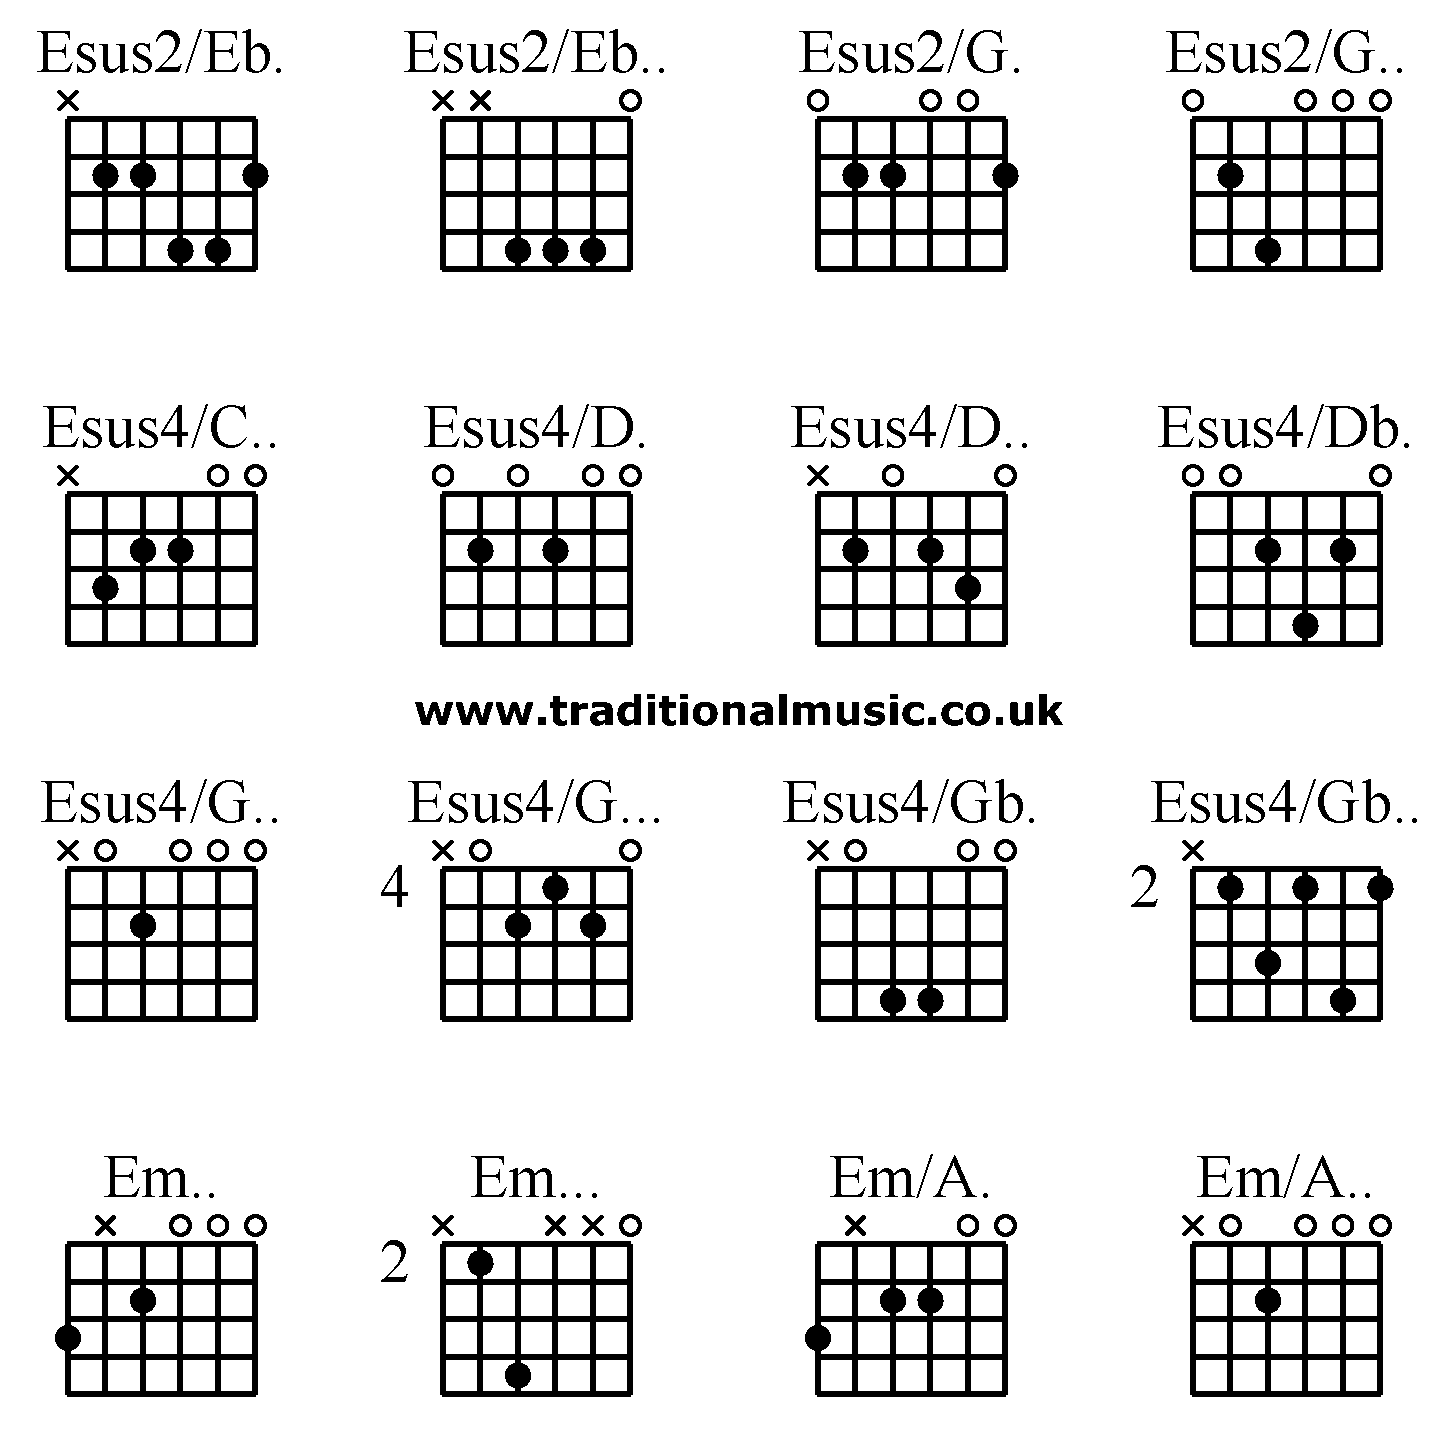 Advanced guitar chords:Esus2/Eb. Esus2/Eb.. Esus2/G. Esus2/G.. Esus4/C.. Esus4/D. Esus4/D.. Esus4/Db. Esus4/G.. Esus4/G... Esus4/Gb. Esus4/Gb.. Em.. Em... Em/A. Em/A..